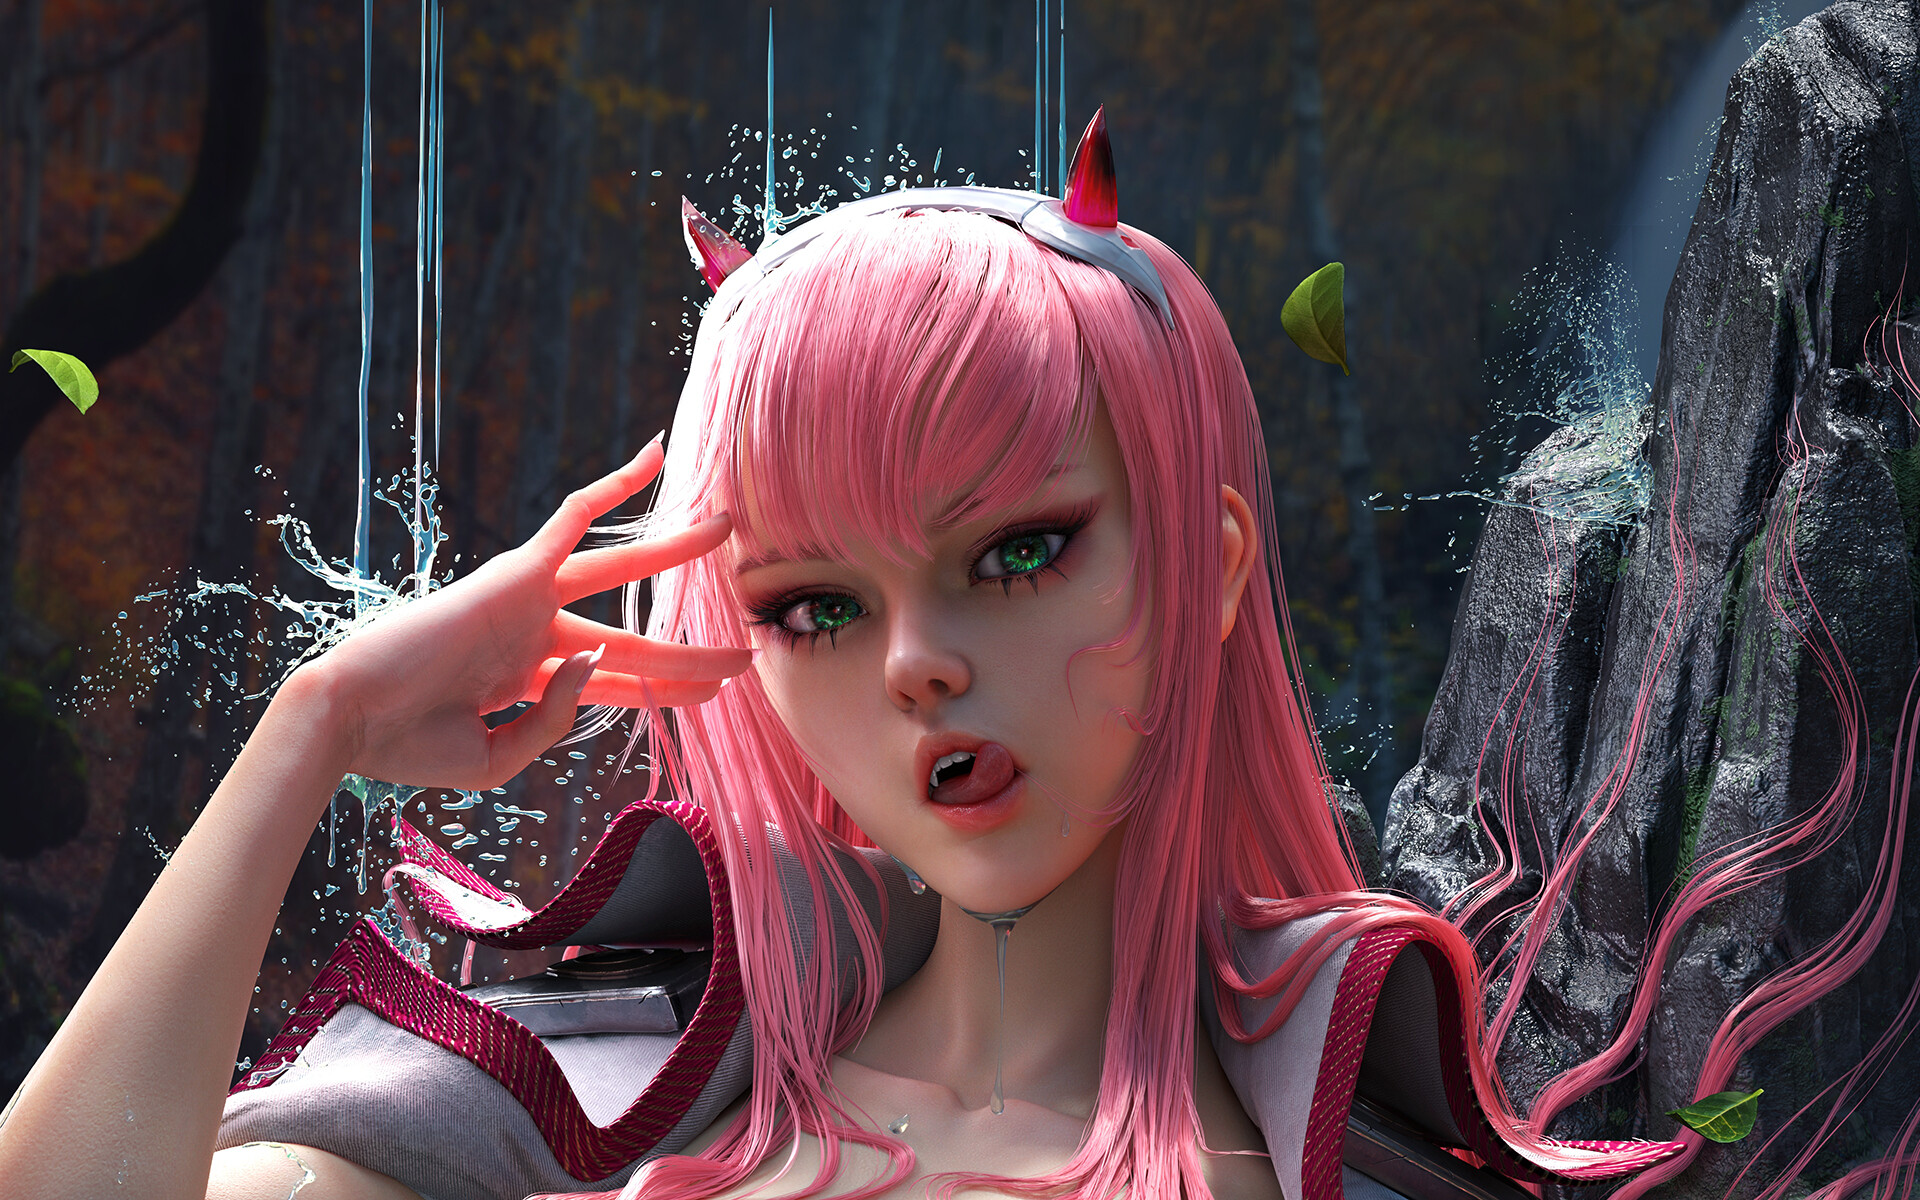 ArtStation Artwork Fantasy Art Fantasy Girl Pink Hair Water Parted Lips Tongues Tongue Out Long Hair 1920x1200